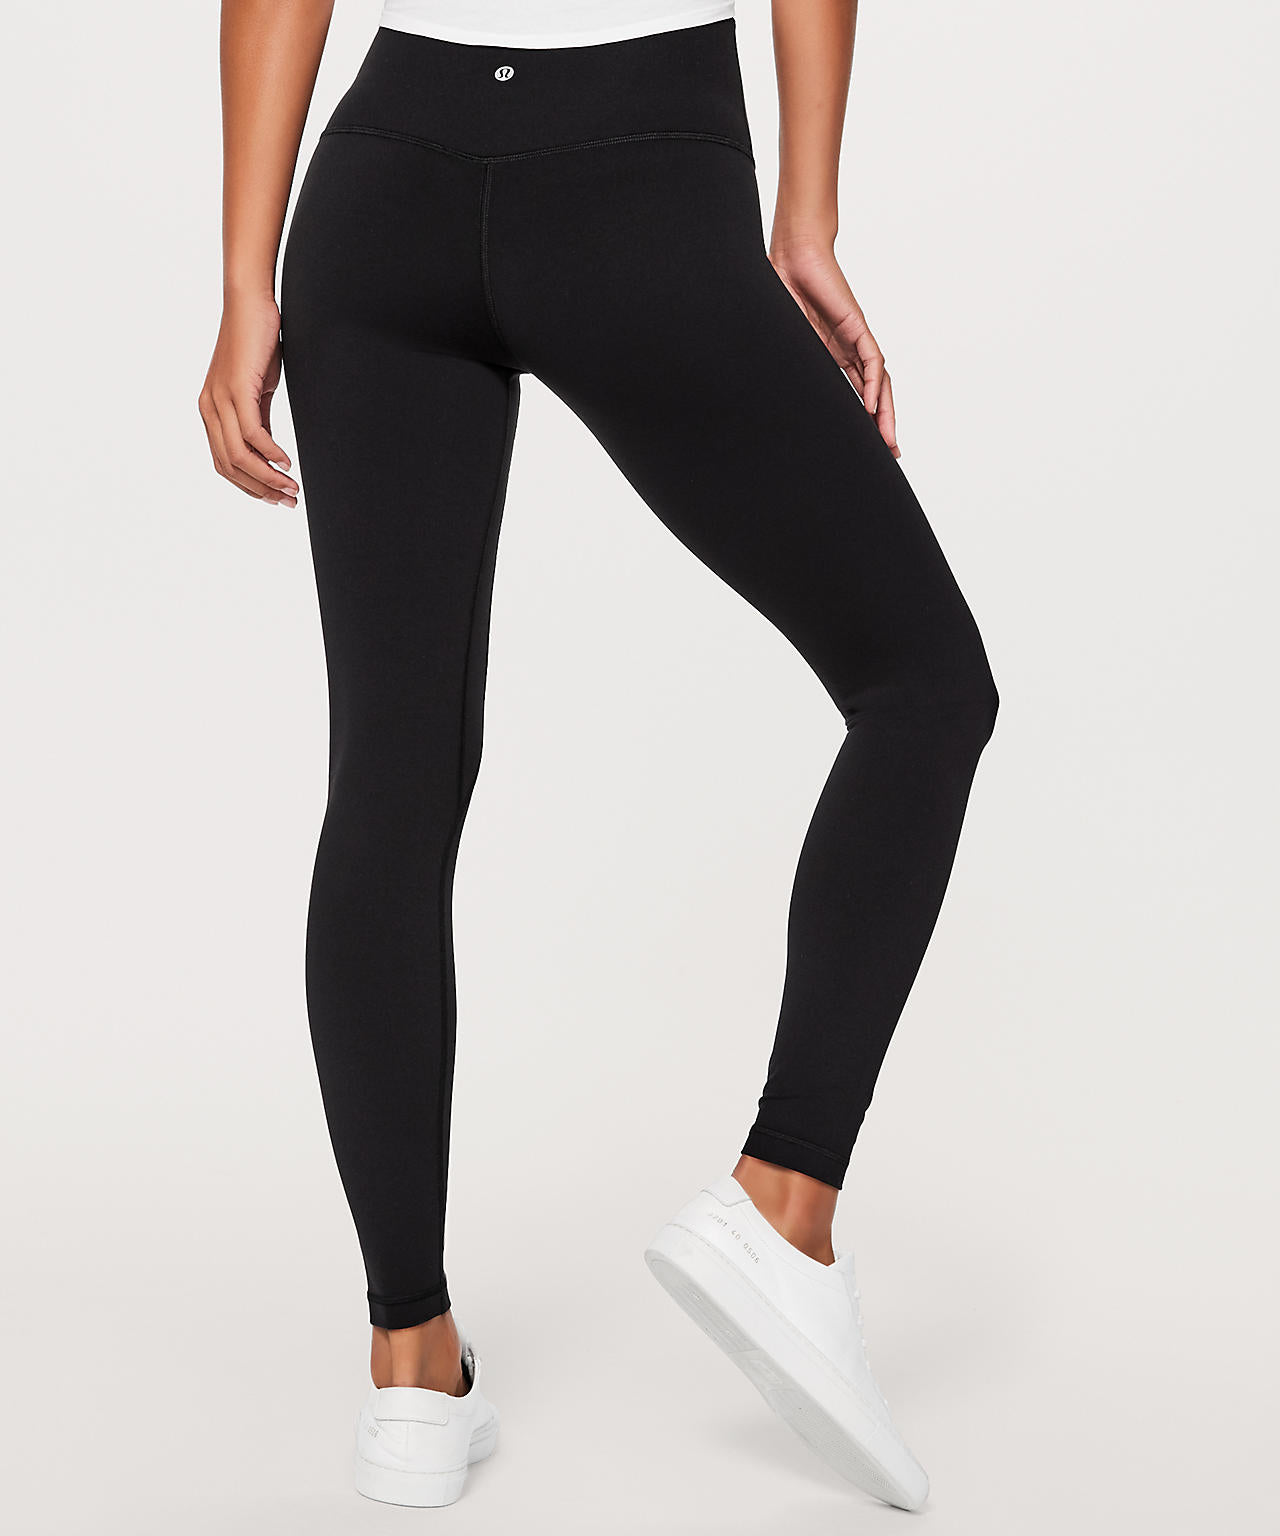 Lululemon Black Yoga Pants Size 6 Preowned